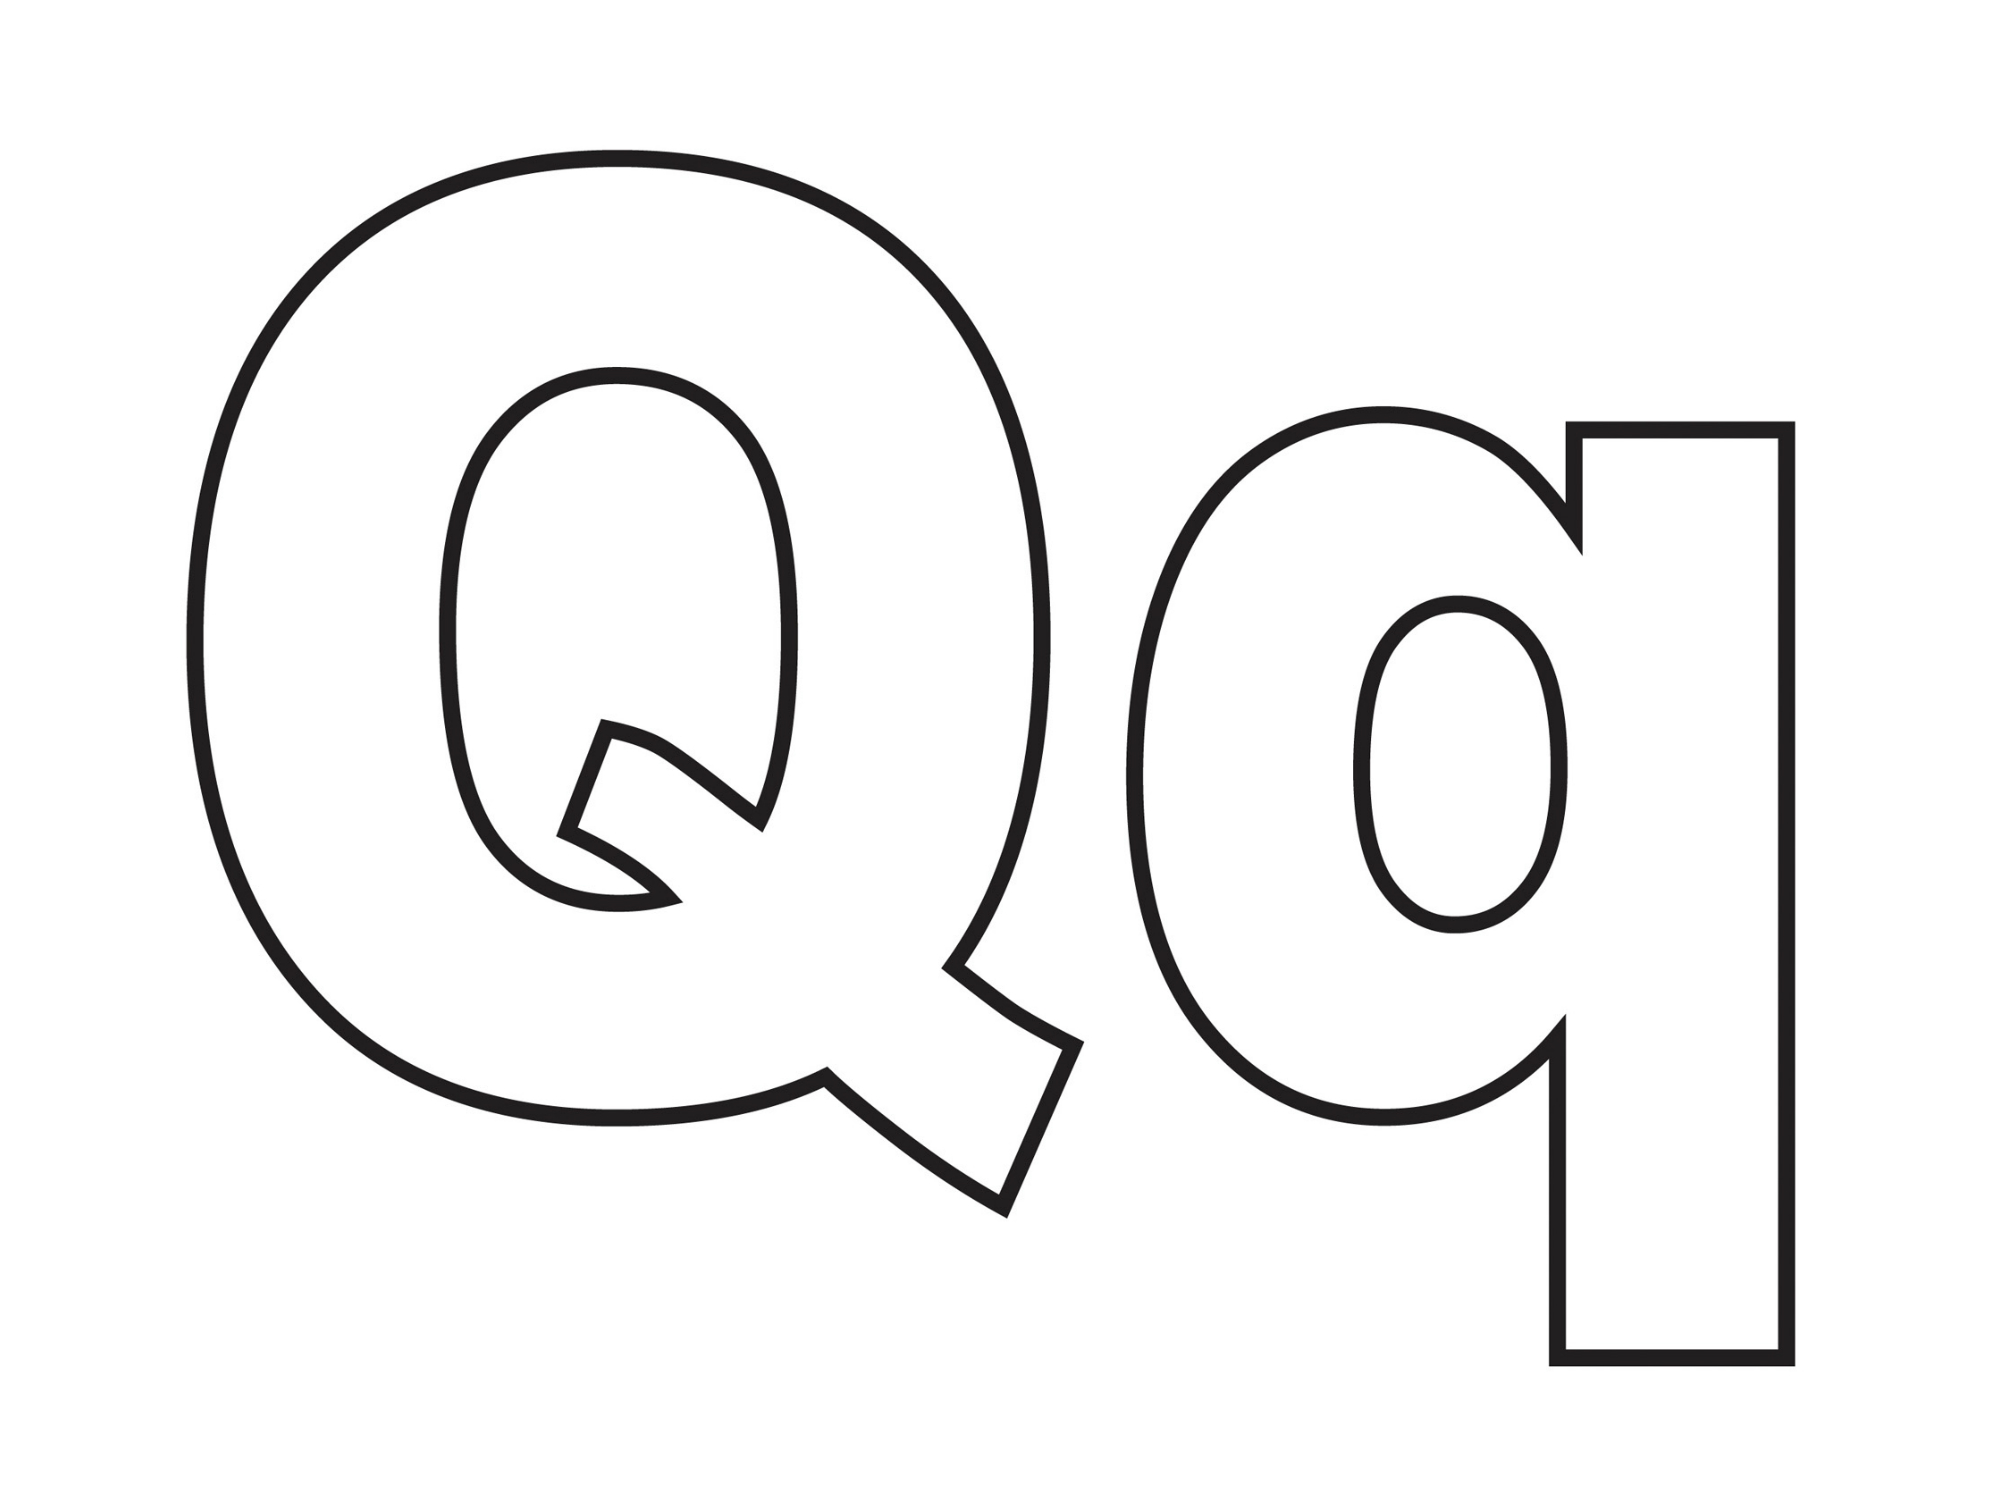 карточка для дошкольников - буква q для раскрашивания